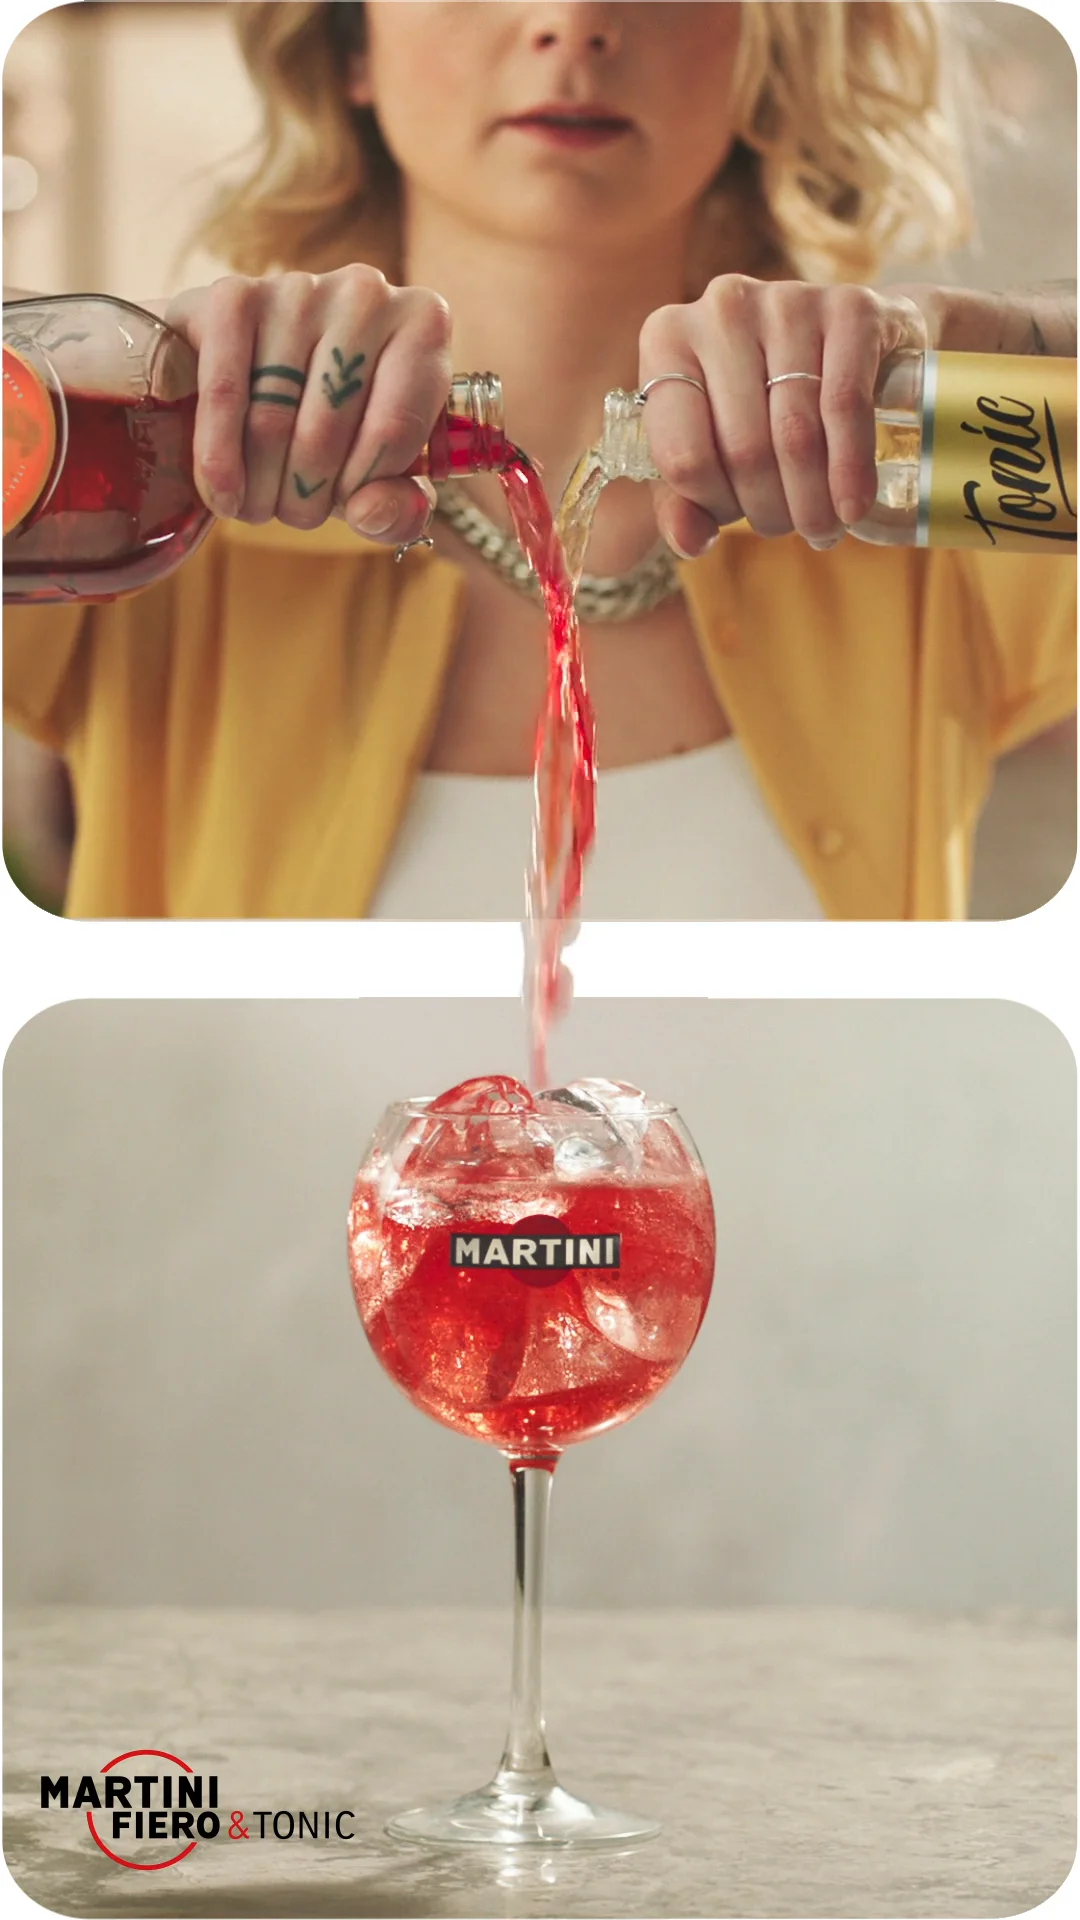 Martini Fiero - on Pinterest Vimeo \'Pour